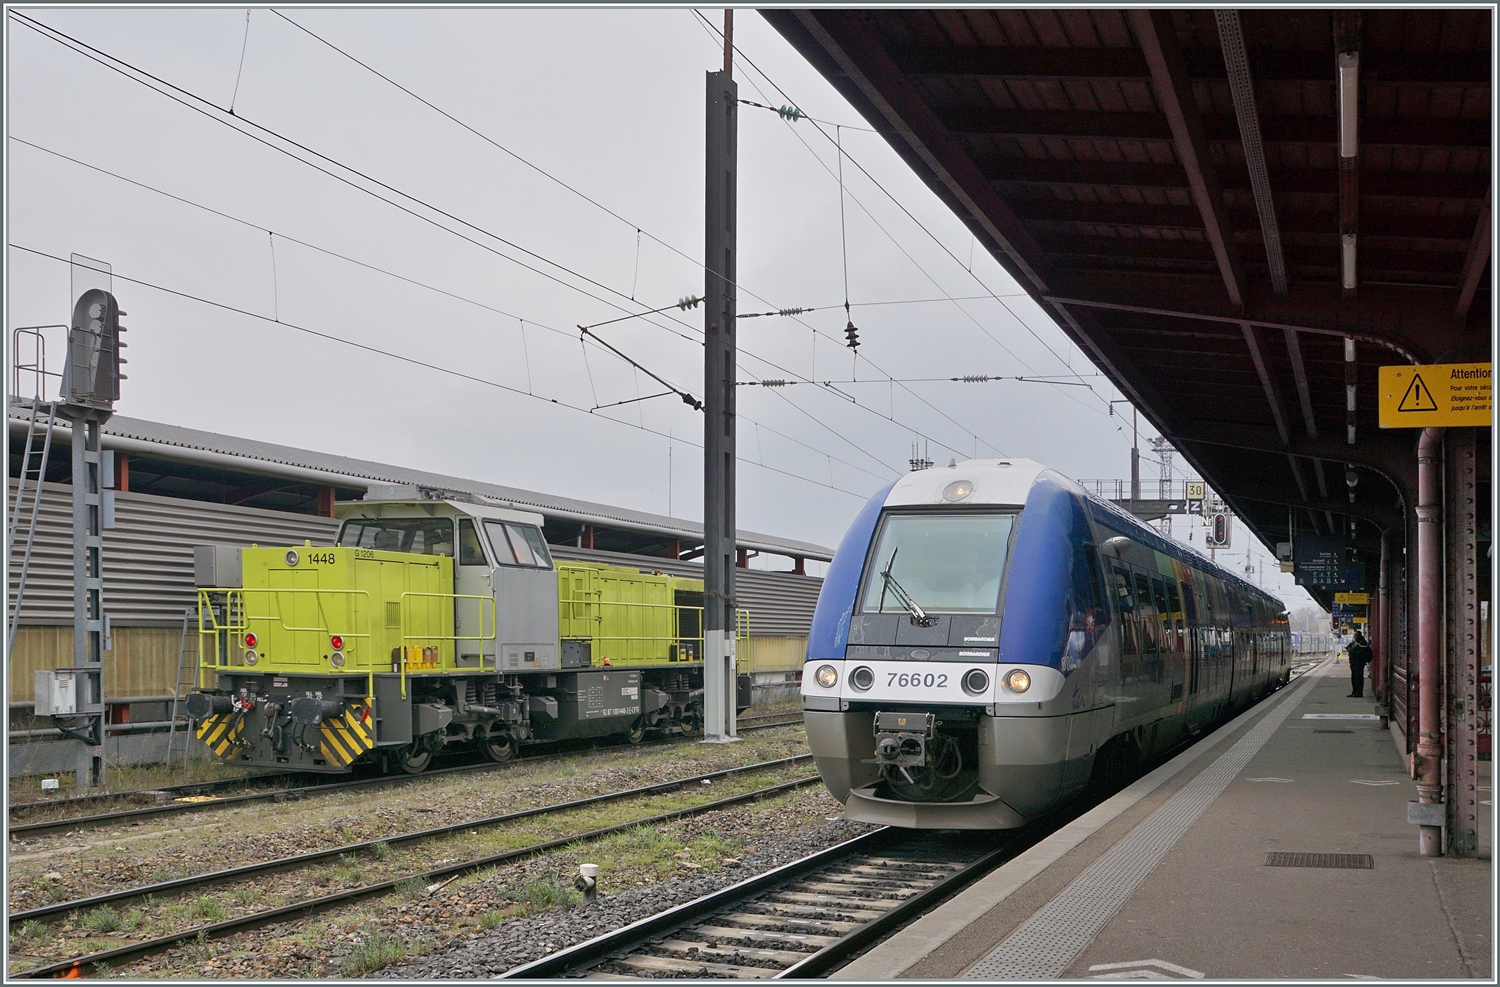 Die Captrain France (CPTF) 1448 D 1206 mit der UIC Nummer 92 87 1001448-3 F-CPTF mit der Zulassung in Frankreich und Deutschland hat sich an der Tankstelle in Strasbourg versorgt und ist nun auf Rangierfahrt zu ihrem nächsten Einsatz. Rechts im Bild der SNCF X 76602. 

12. März 2024